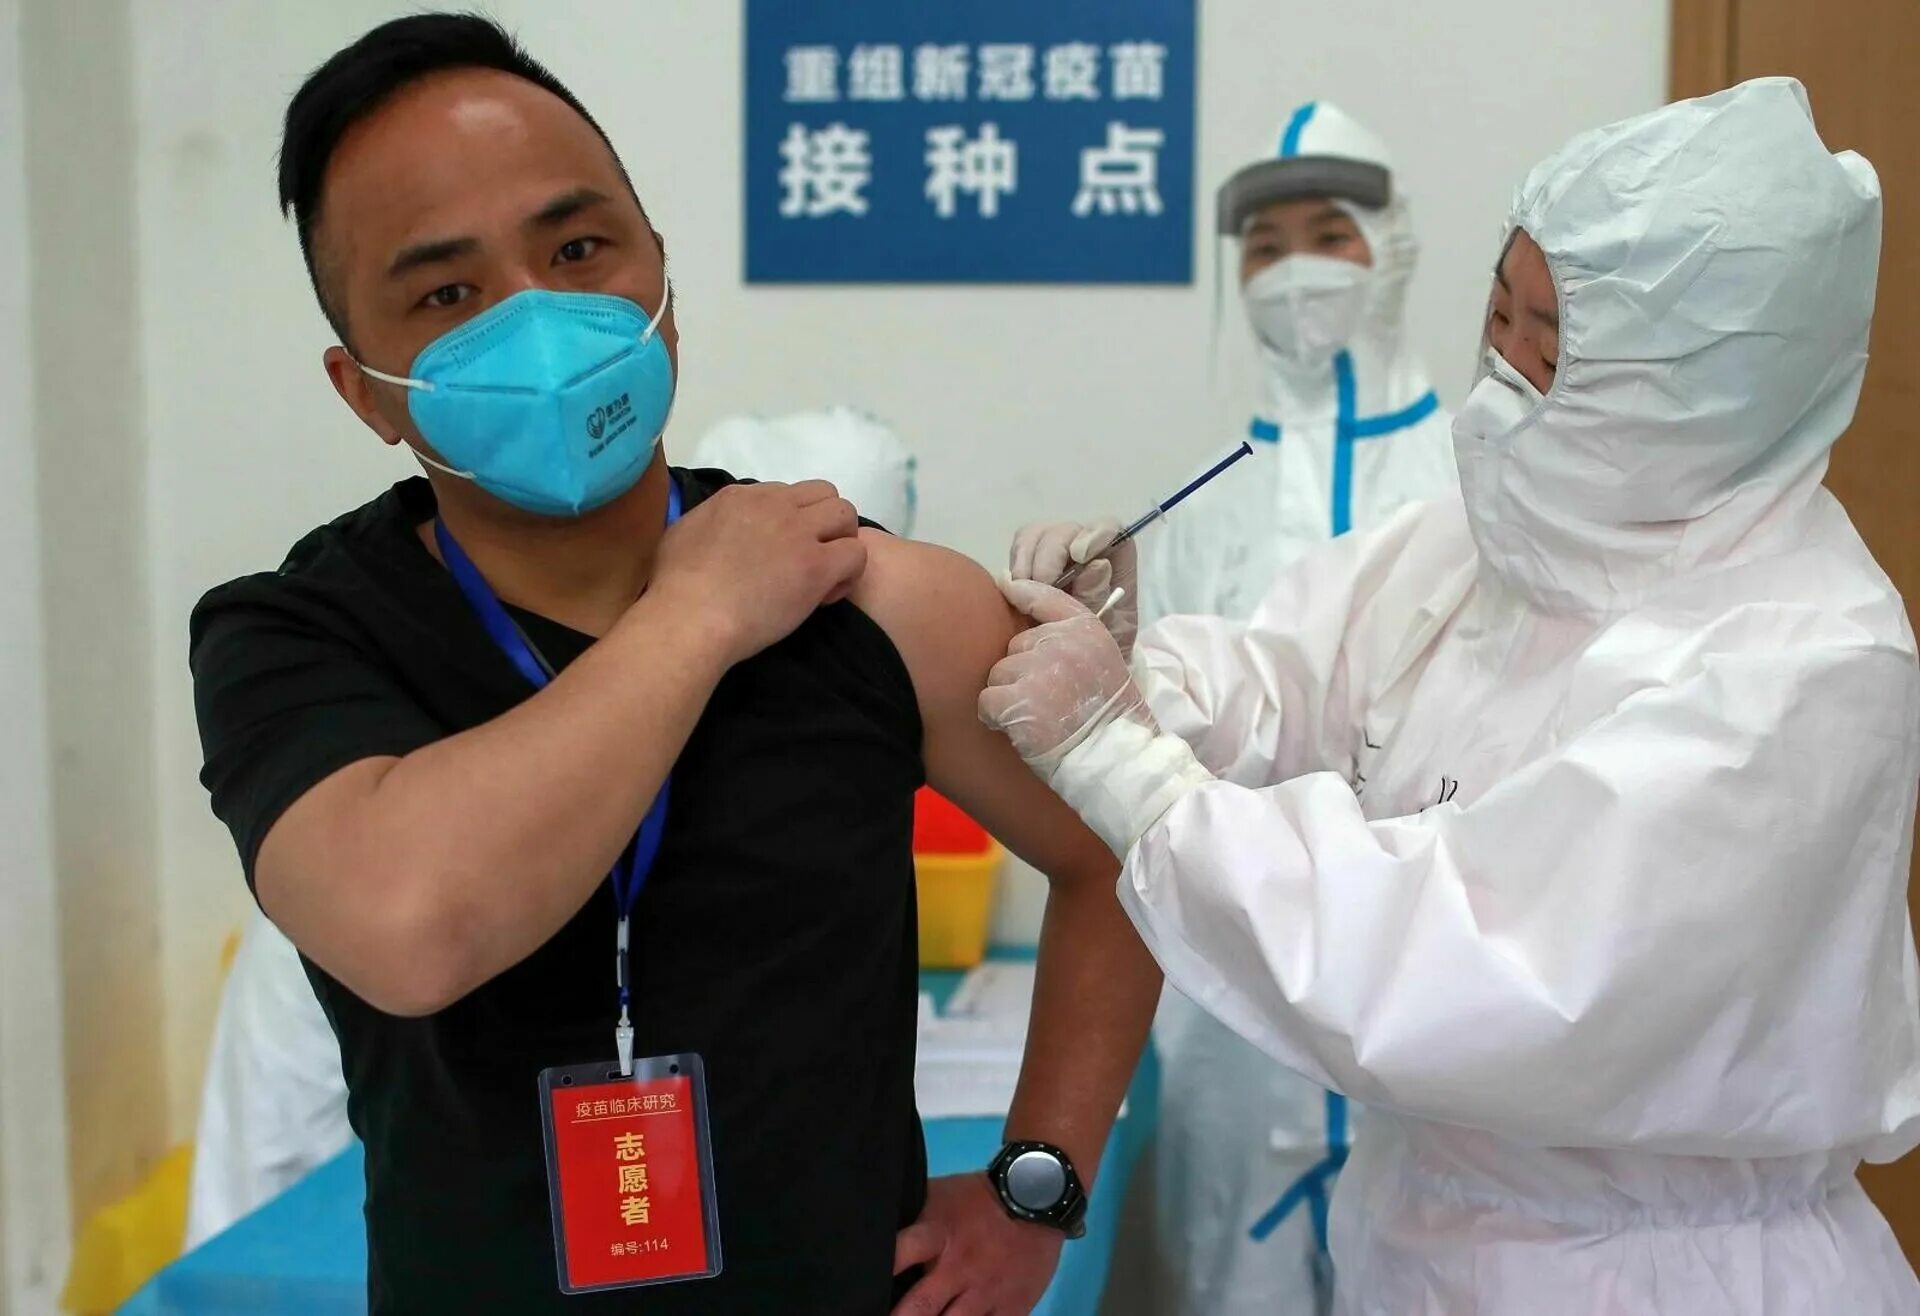 Covid-19 вакцина китайская. Вакцинация в Китае. Здравоохранение в Китае. Ковид в Китае вакцинация. Вакцины китая